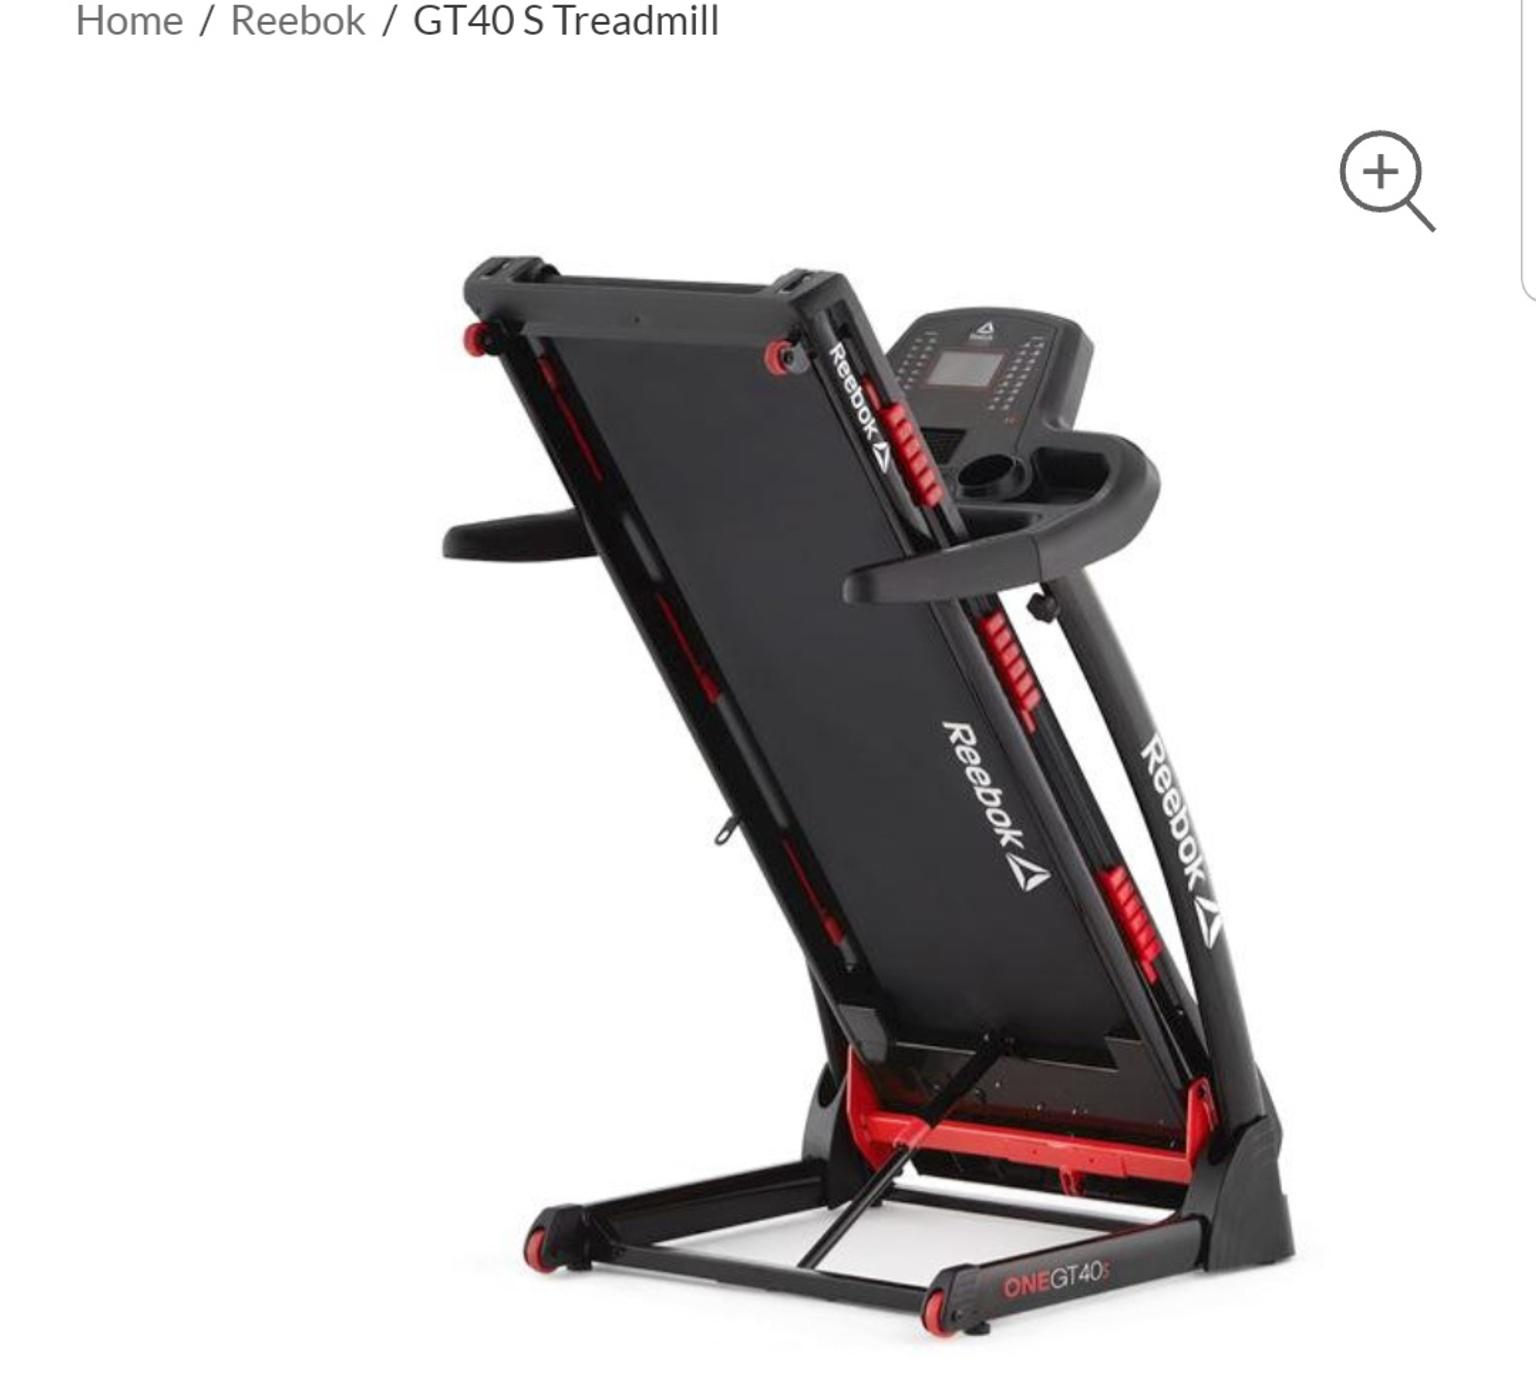 gt40 treadmill